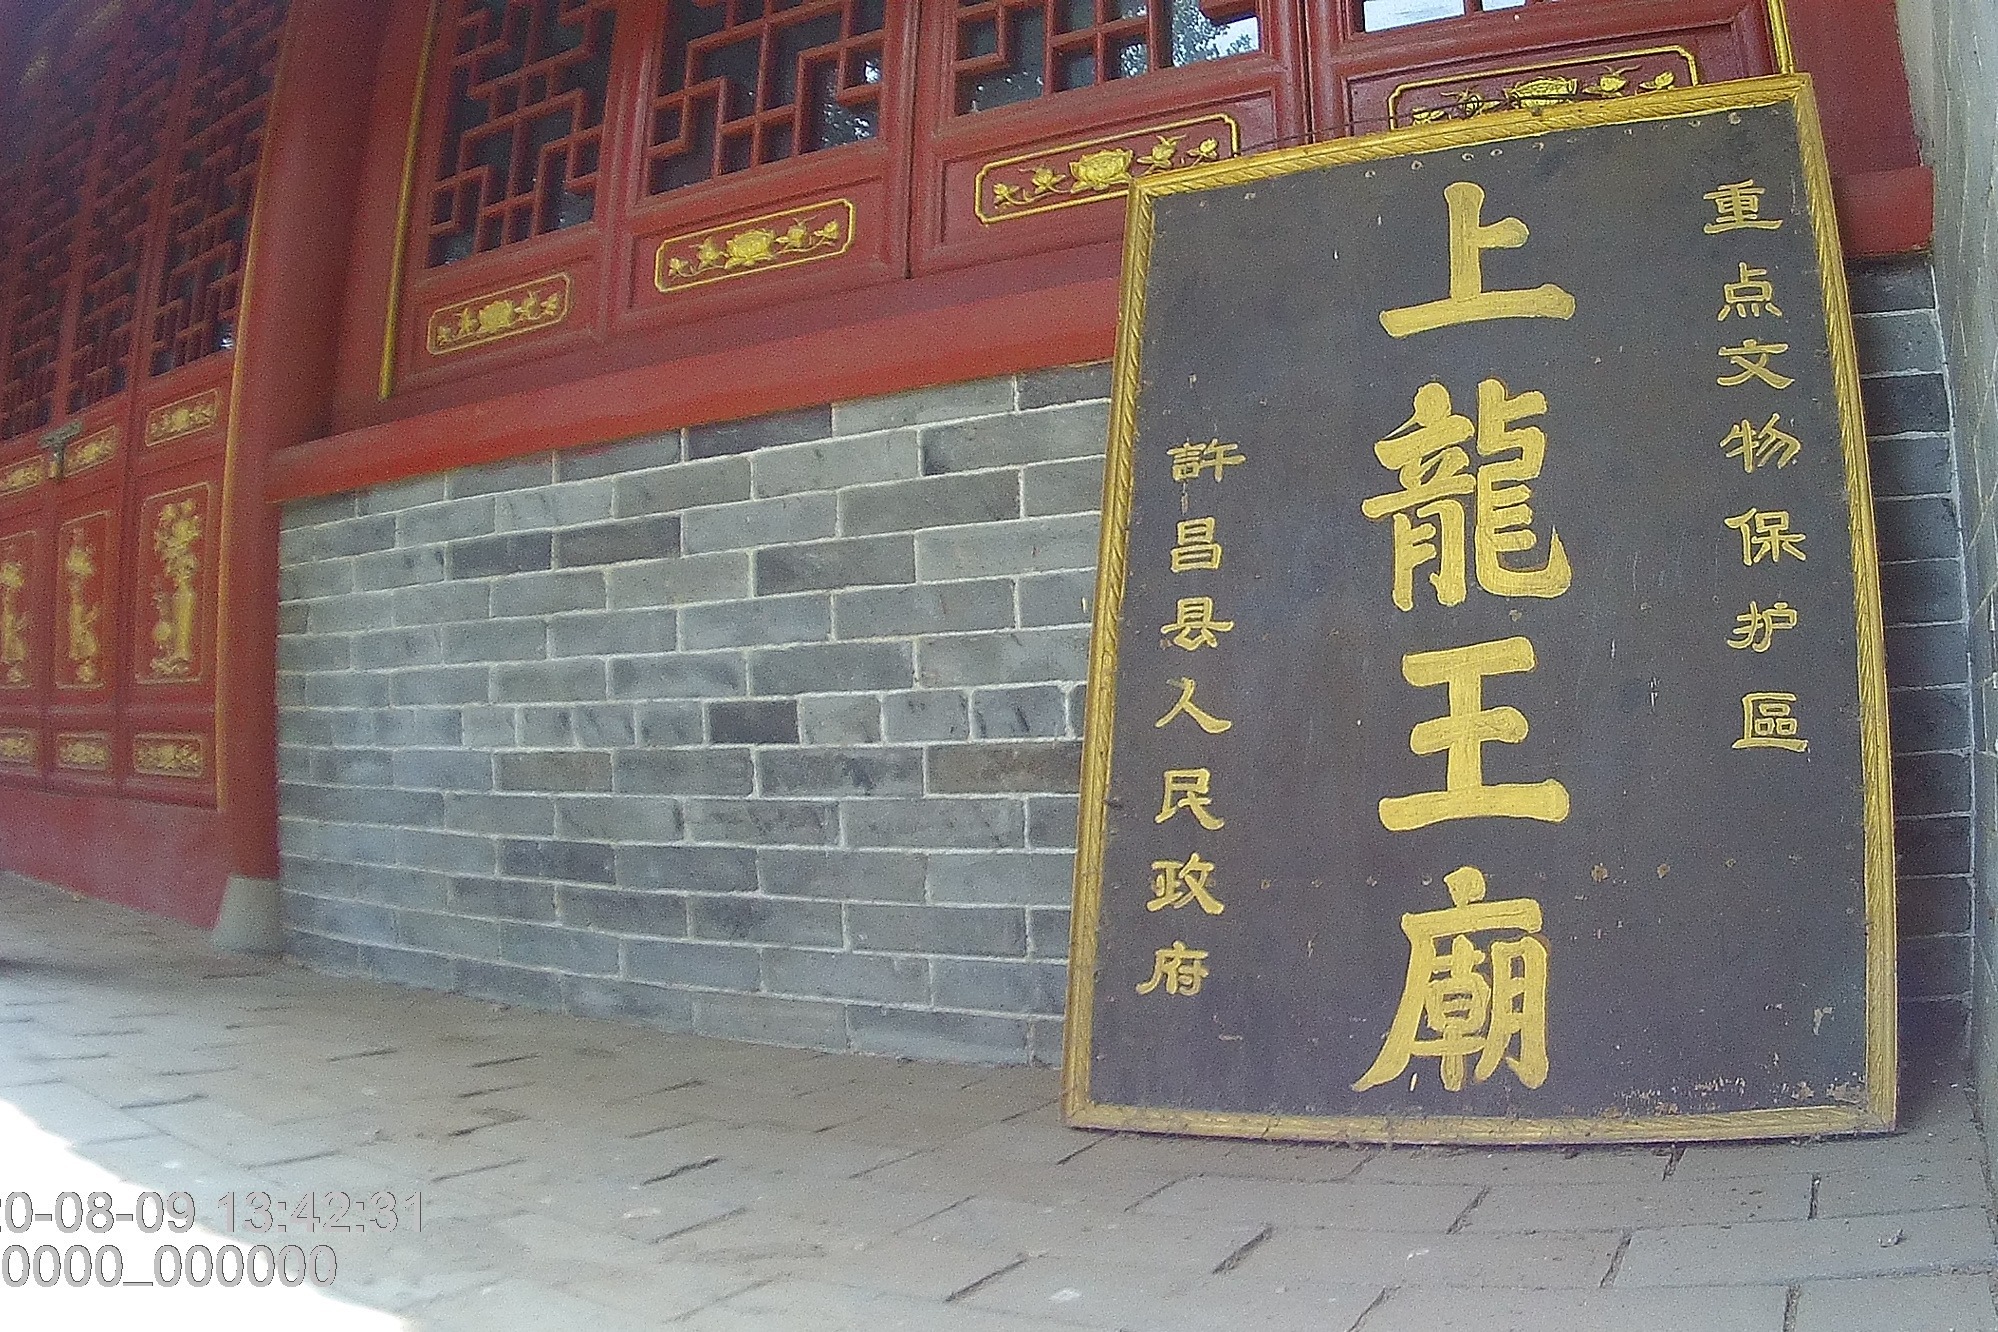 上龙王庙，不是所有龙王庙都称上龙王庙，唐太宗有关，许昌榆林乡